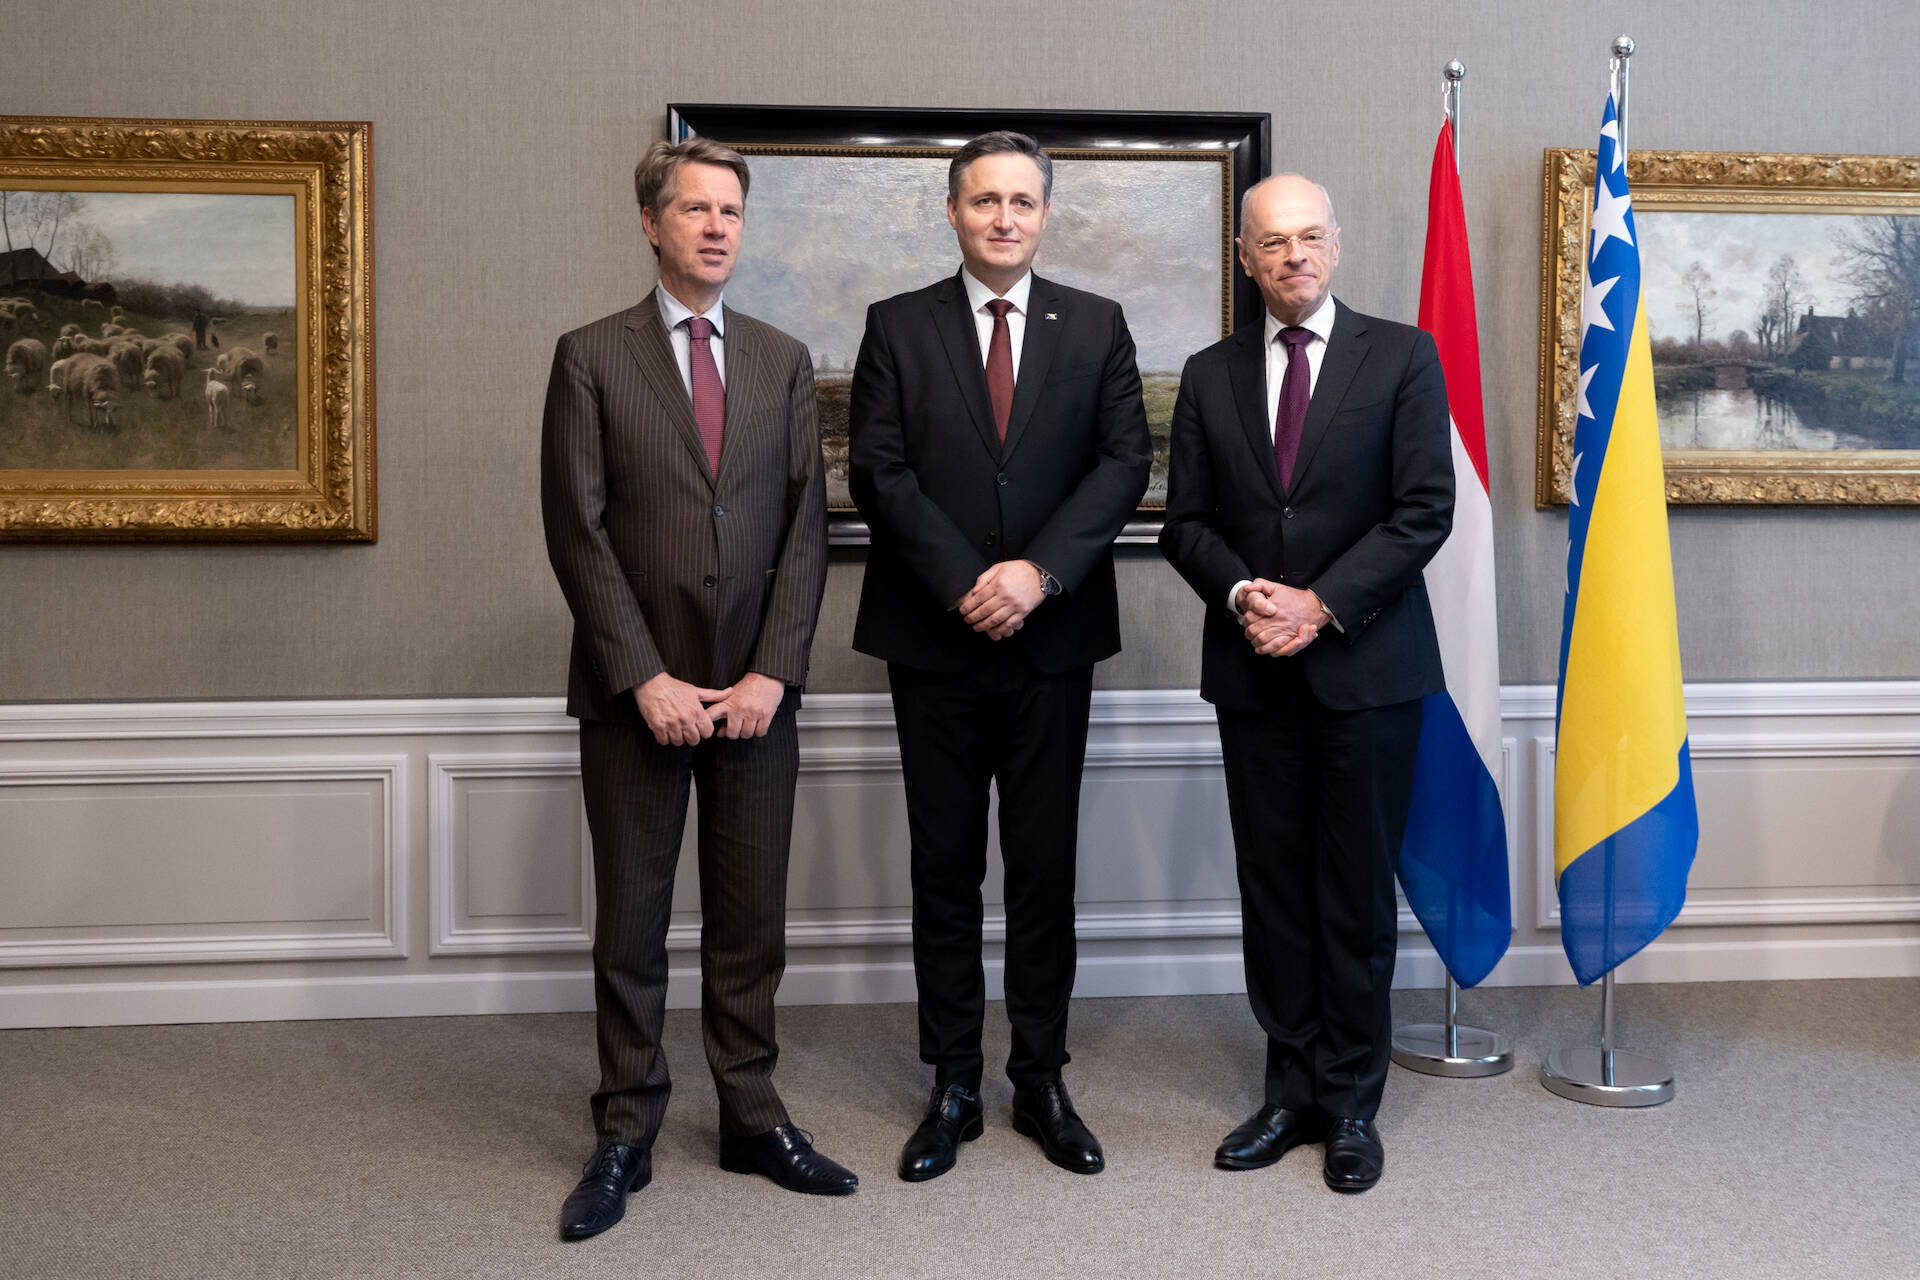 Tweede Kamervoorzitter Bosma, Voorzitter Presidentschap Bećirović en Eerste Kamervoorzitter Bruijn poseren bij de vlaggen